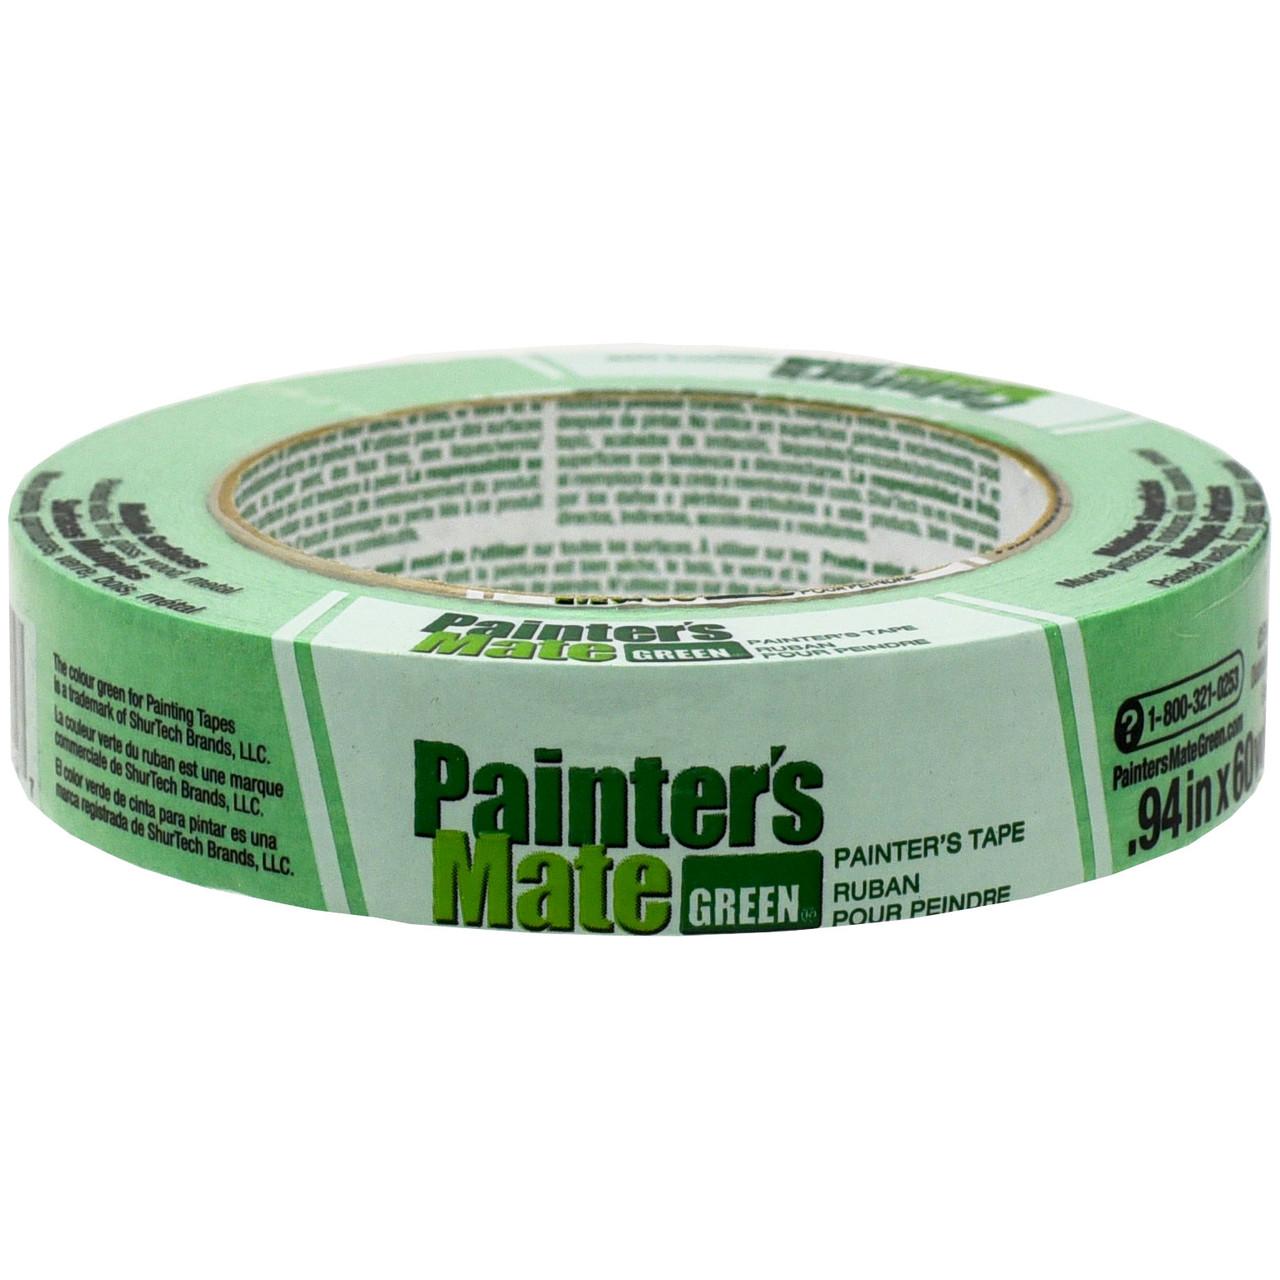 Shurtech Painter's Tape, Mate Green,  1 x 60 yd